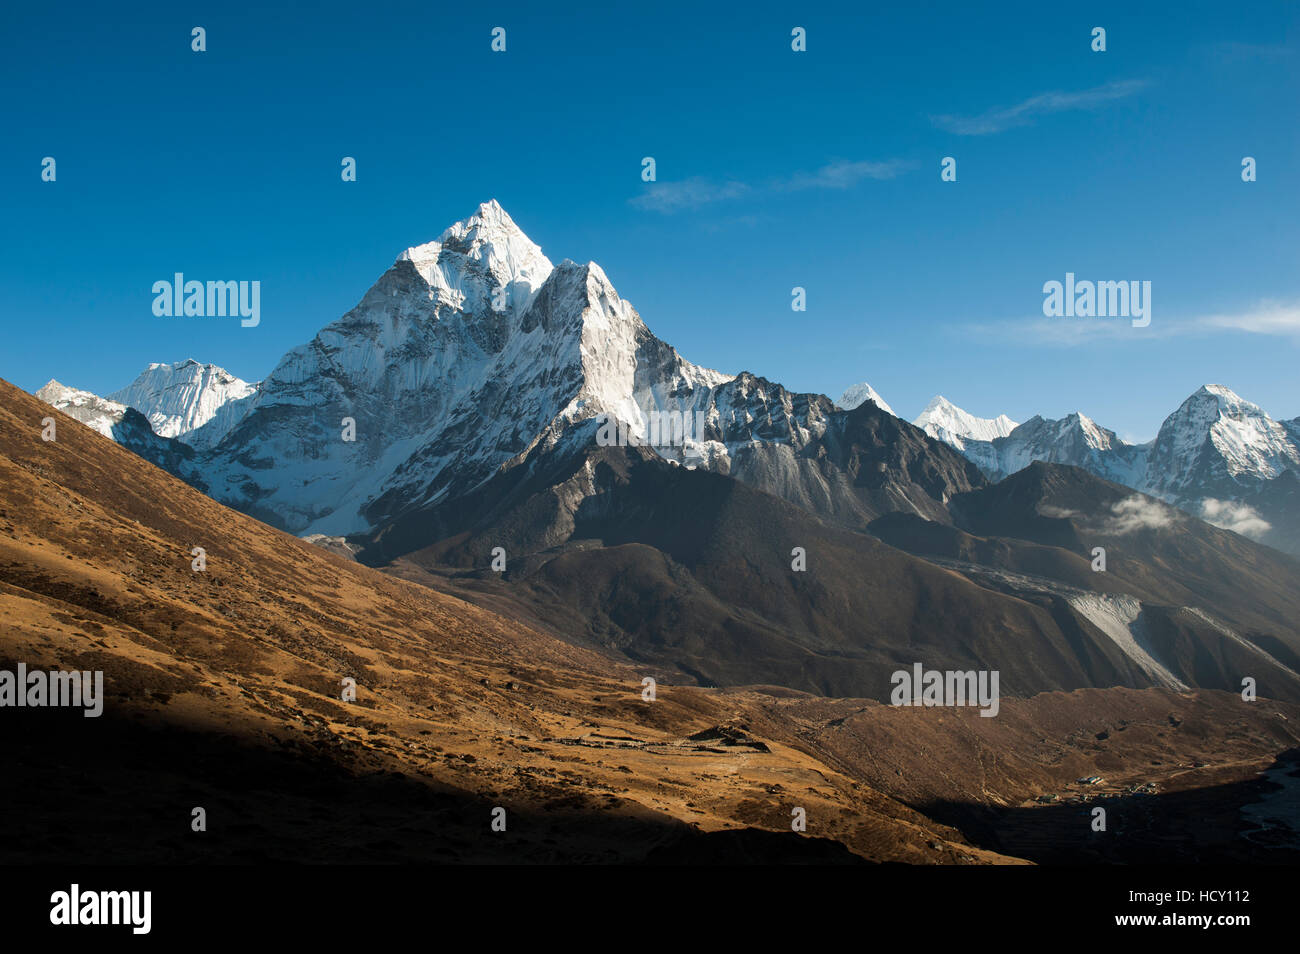 L'étonnante fait sommet de l'Ama Dablam, 6812m, vu de Dhukla dans la région de Khumbu, Népal Banque D'Images